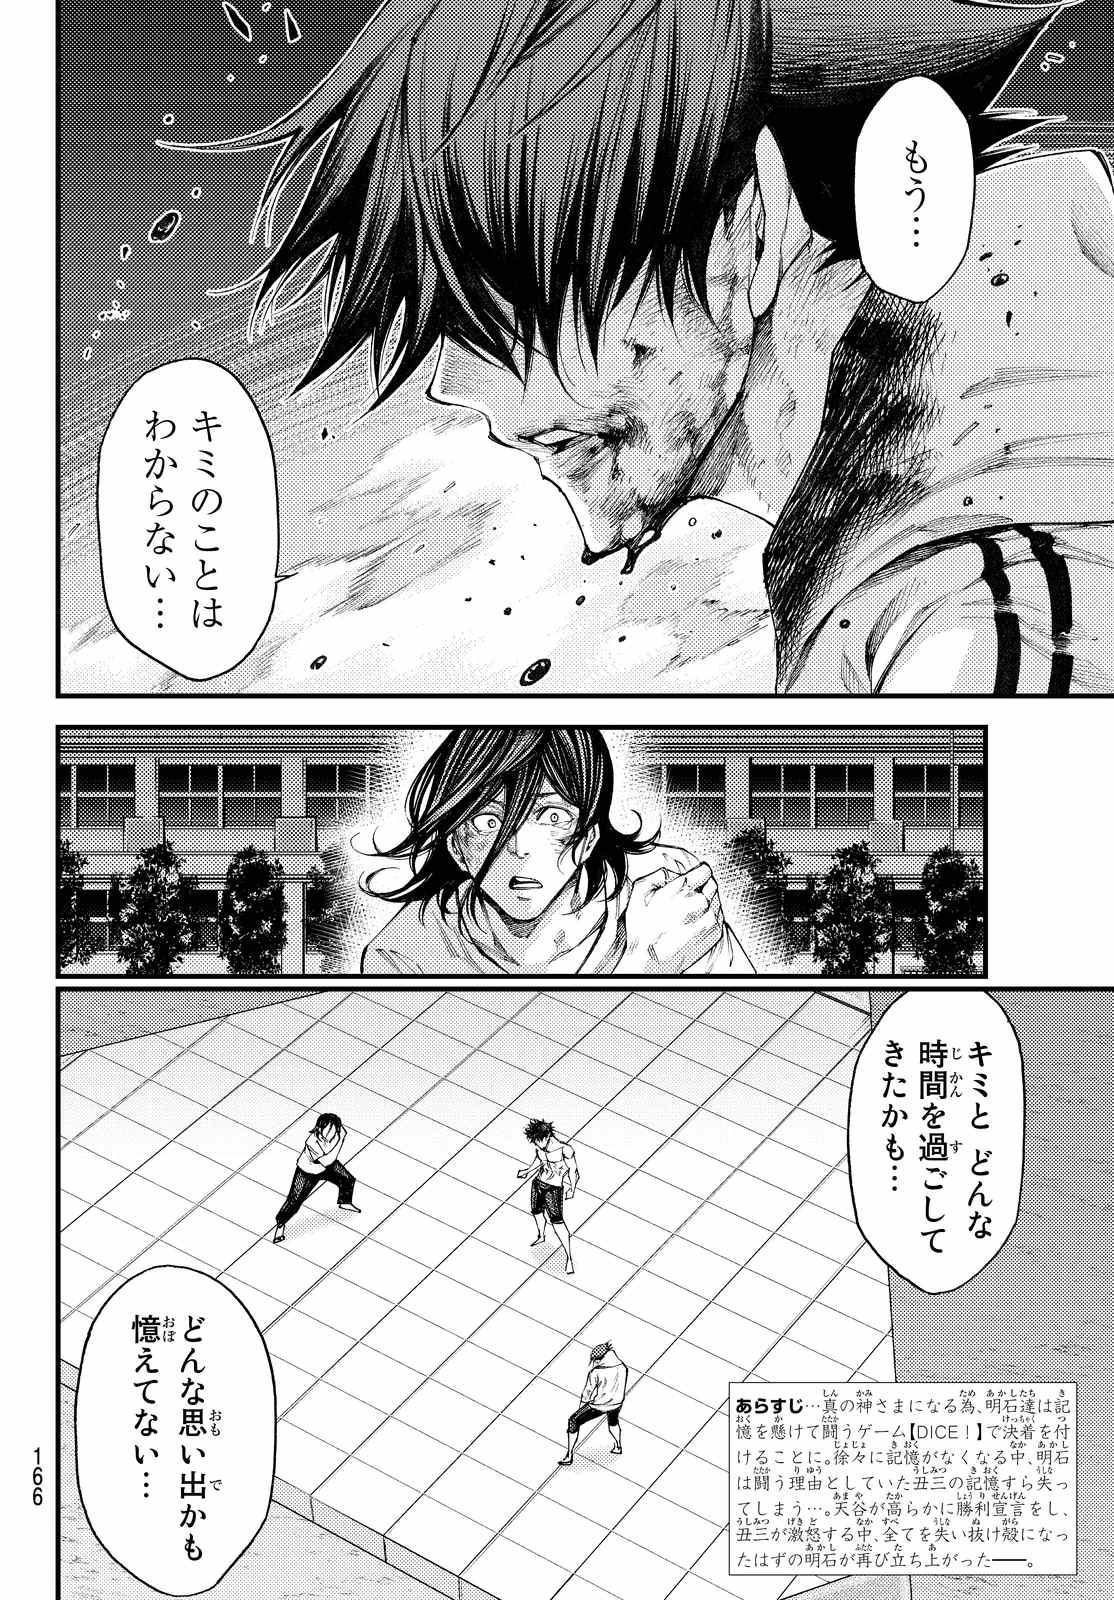 Kamisama no Ituori - Chapter 184 - Page 2